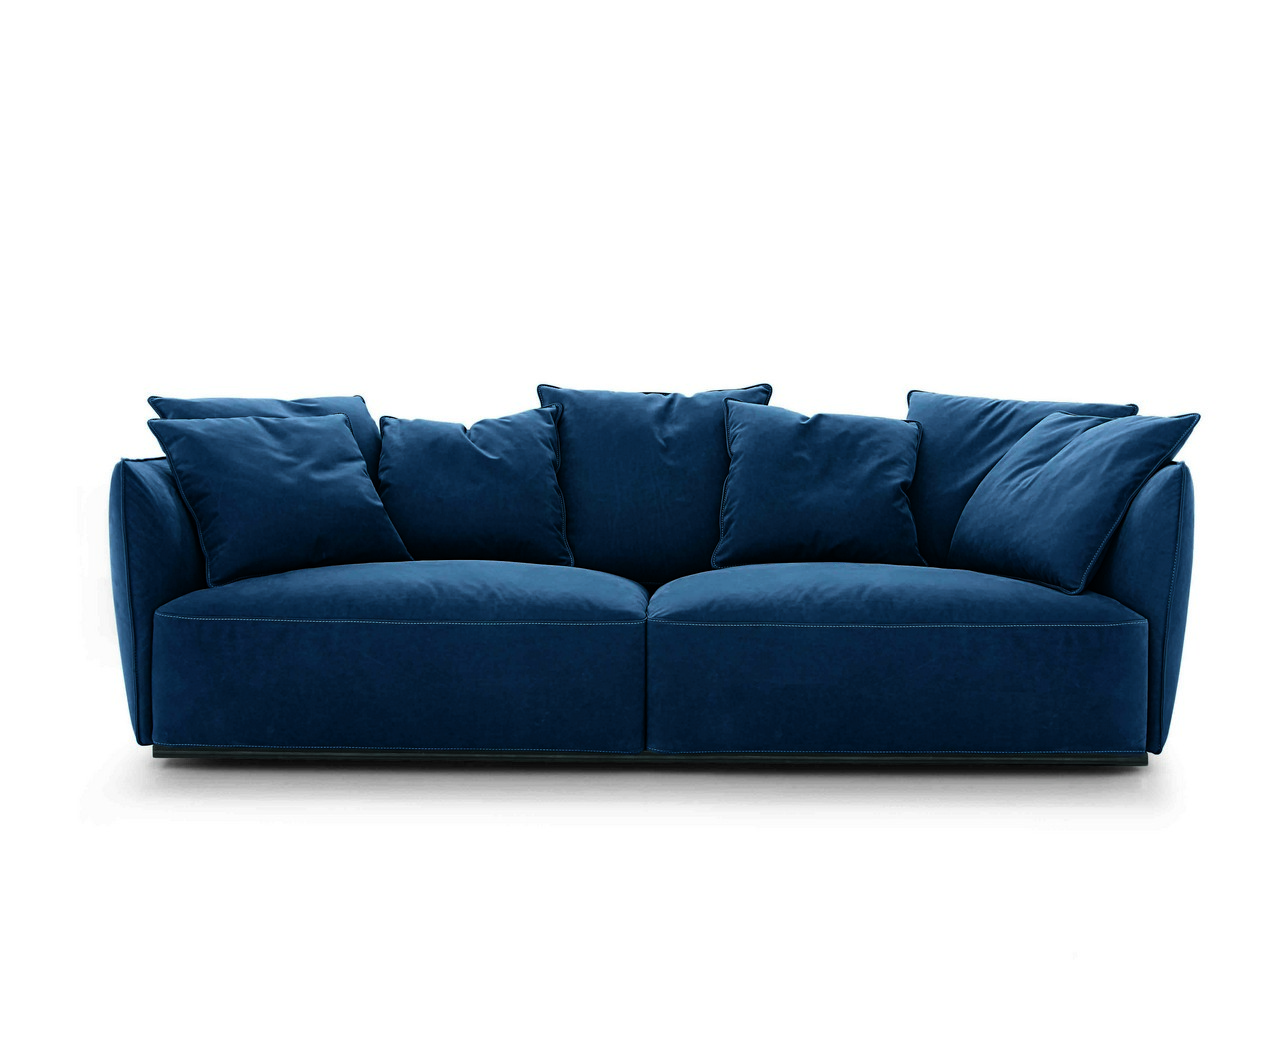 Mobili Alivar: poltrone e divani in blu, le foto